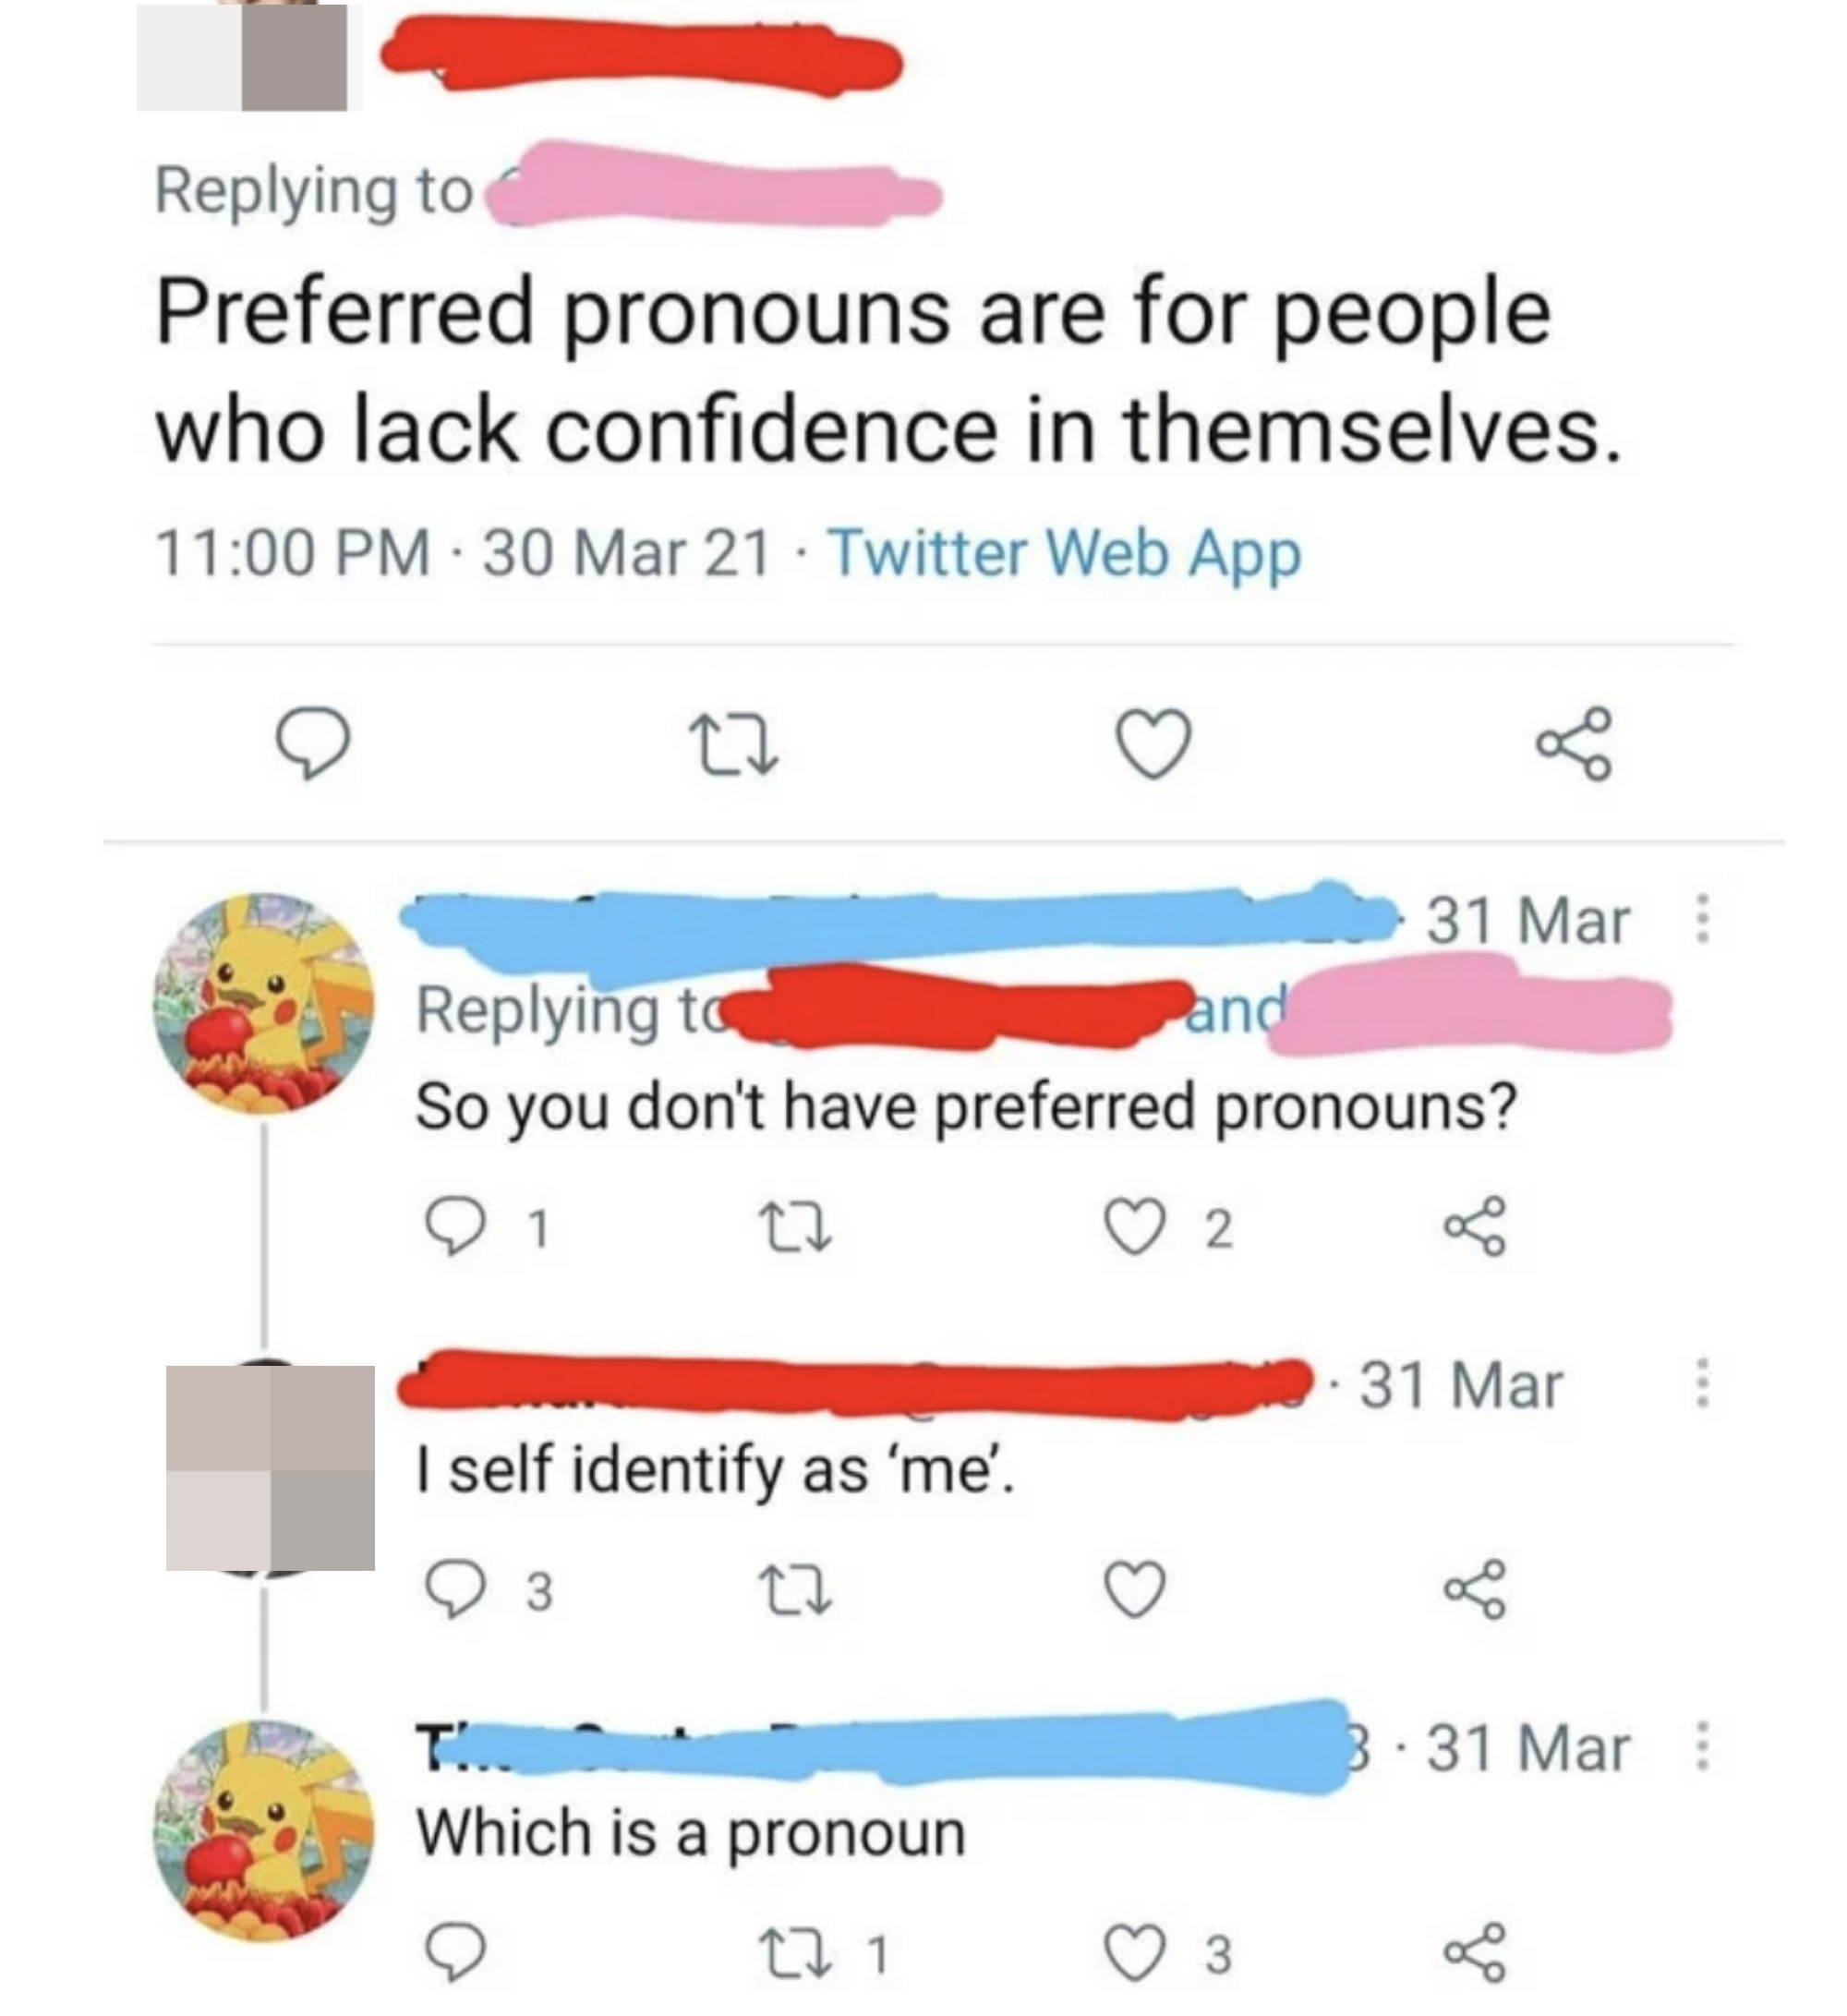 &quot;What is a pronoun&quot;